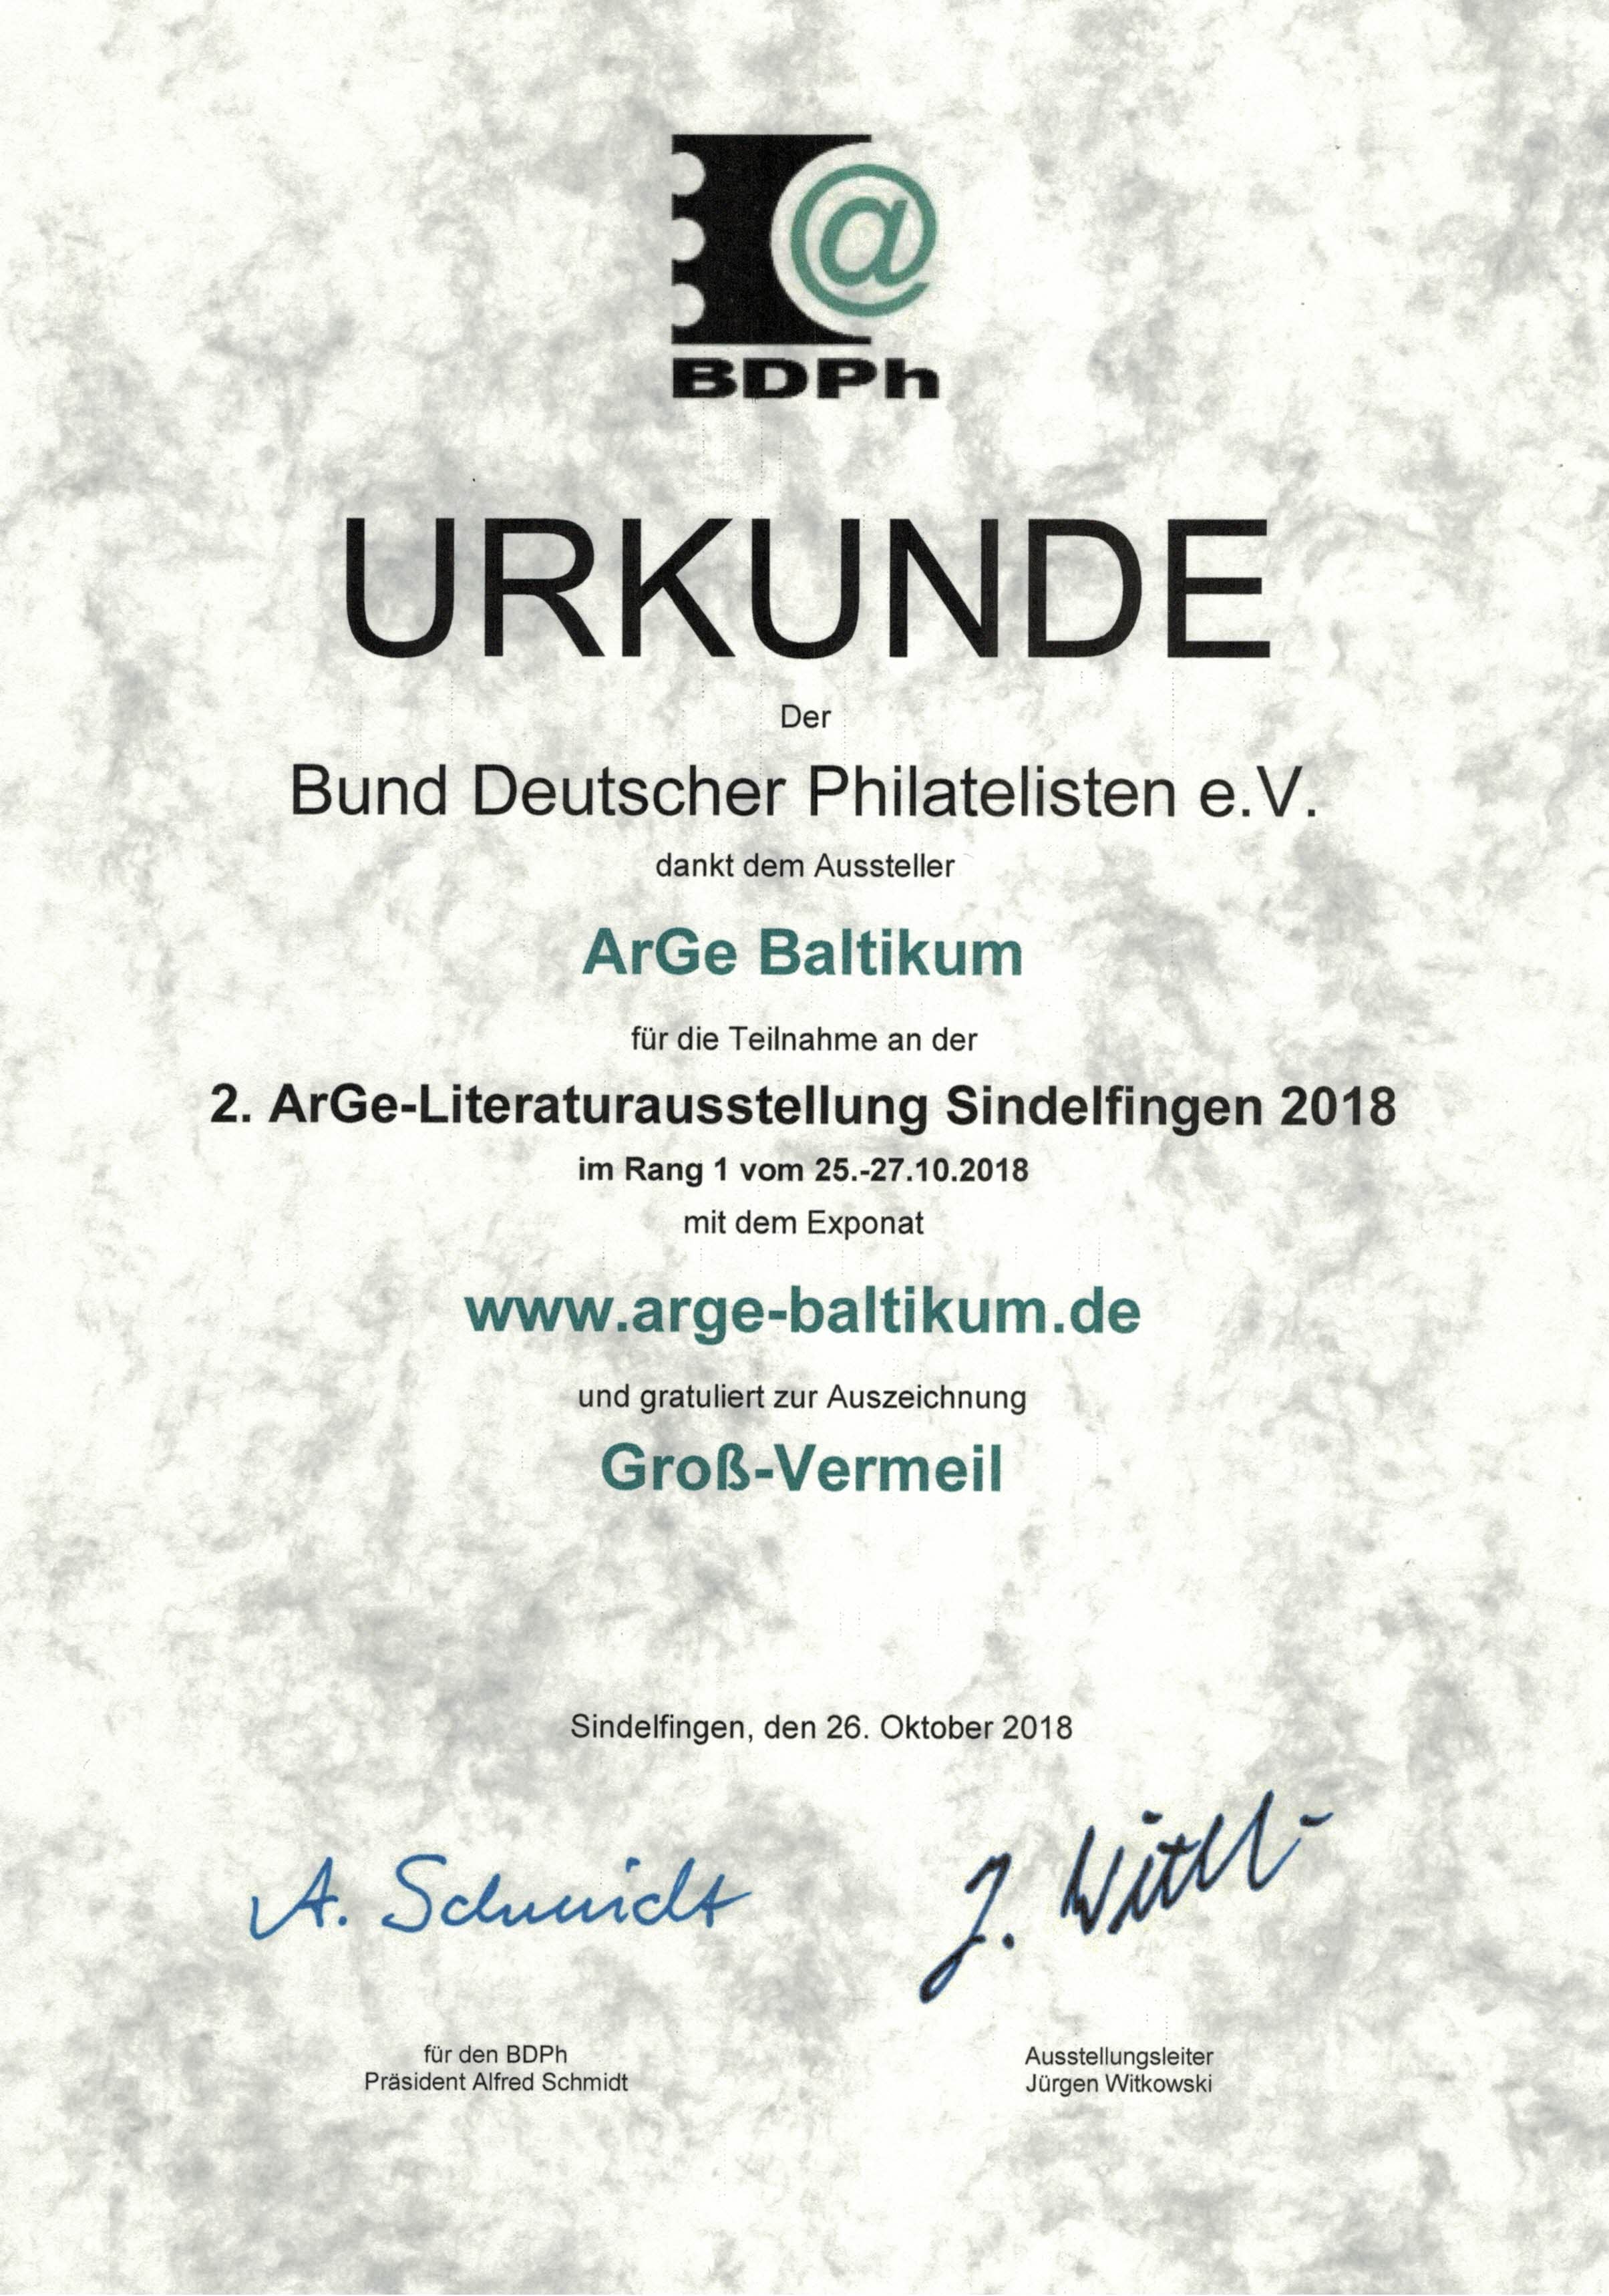 Groß-Vermeil für die Website www.arge-baltikum.de auf der 2. ArGe–Literaturausstellung Sindelfingen 2018